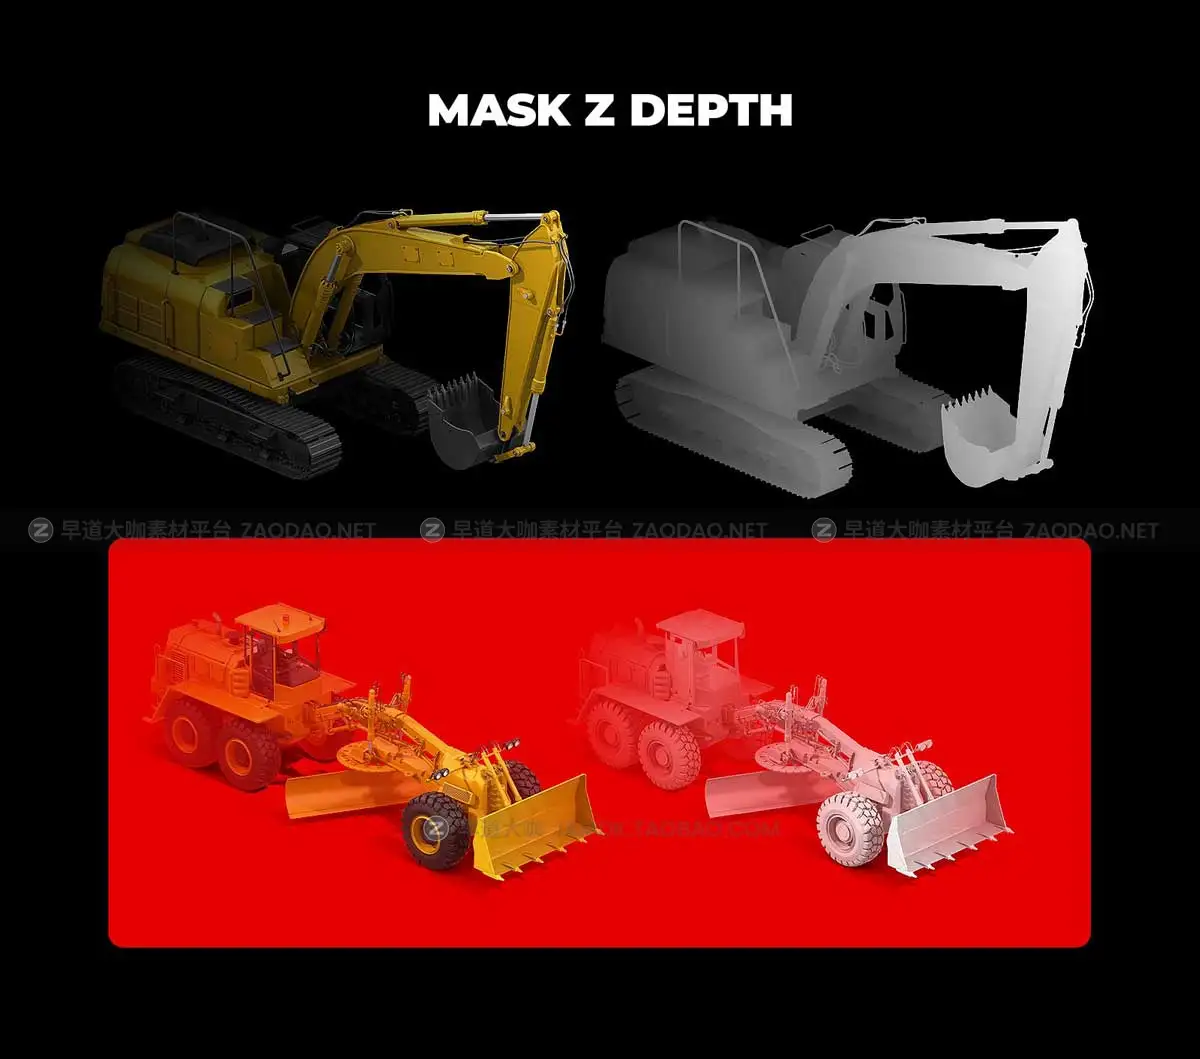 80款等距3D立体视图铲车挖掘机建筑工程机械设备PS样机模型素材 80 PSD Heavy Machines Mockup 360 #01插图3